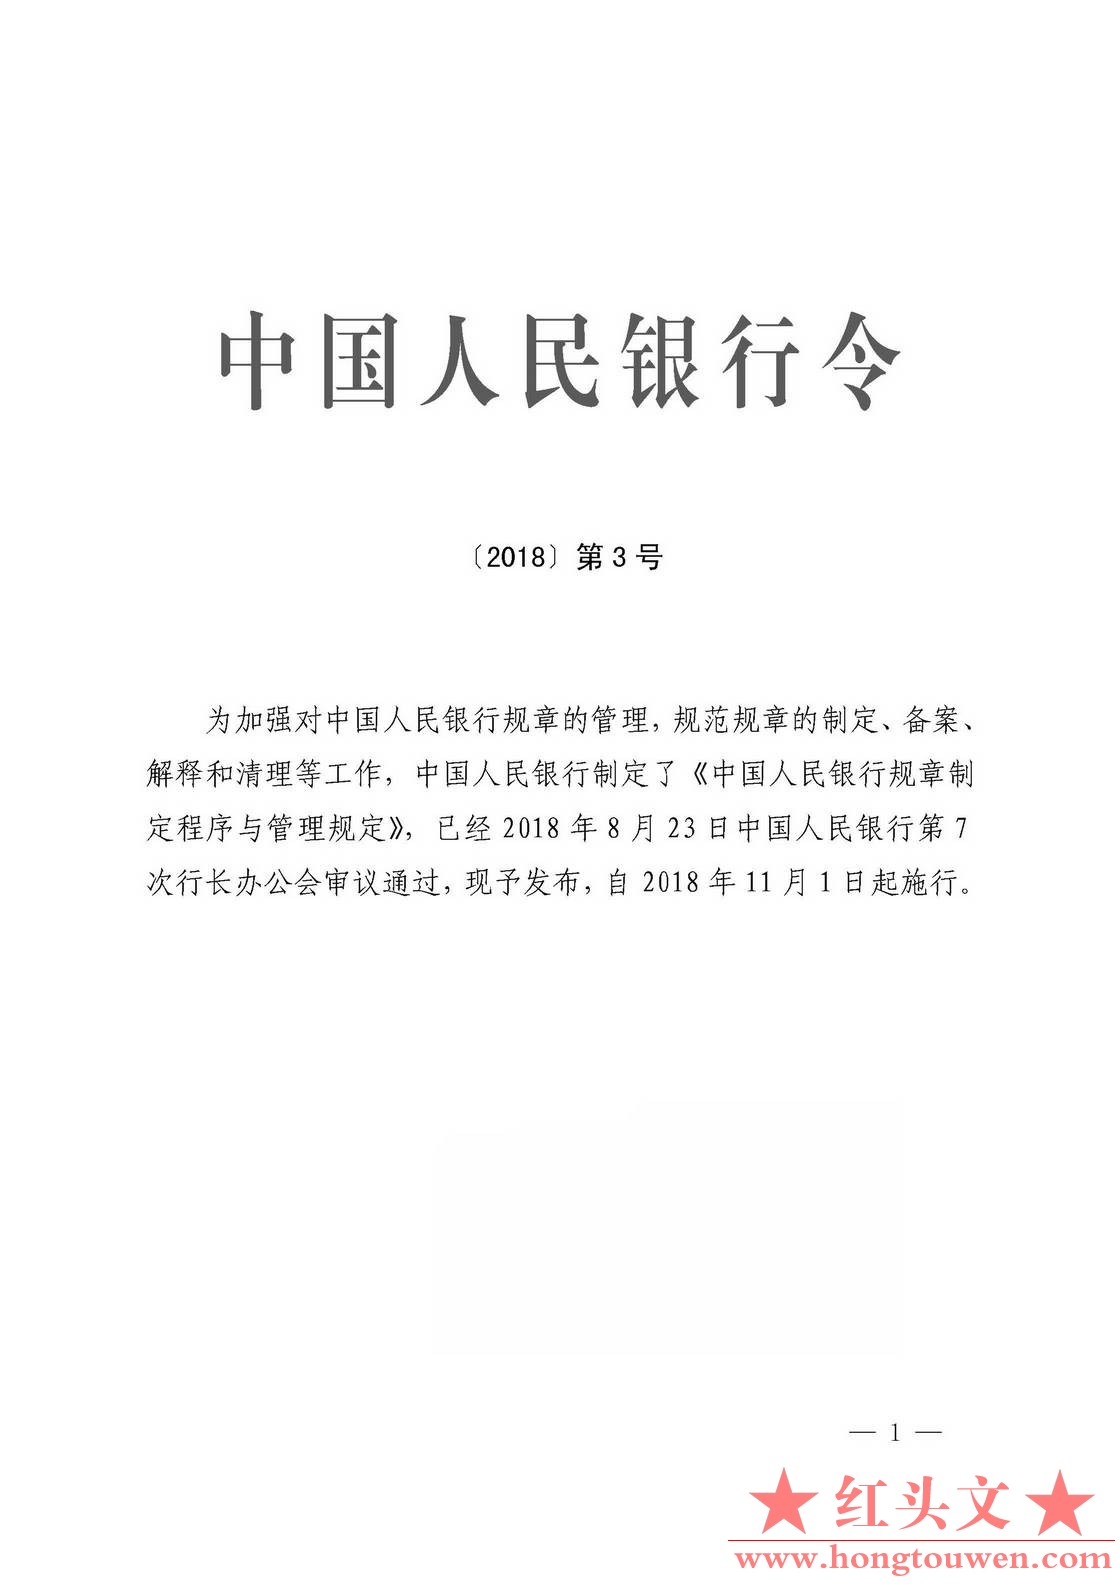 中国人民银行令[2018]3号-中国人民银行规章制定程序与管理规定_页面_01.jpg.jpg